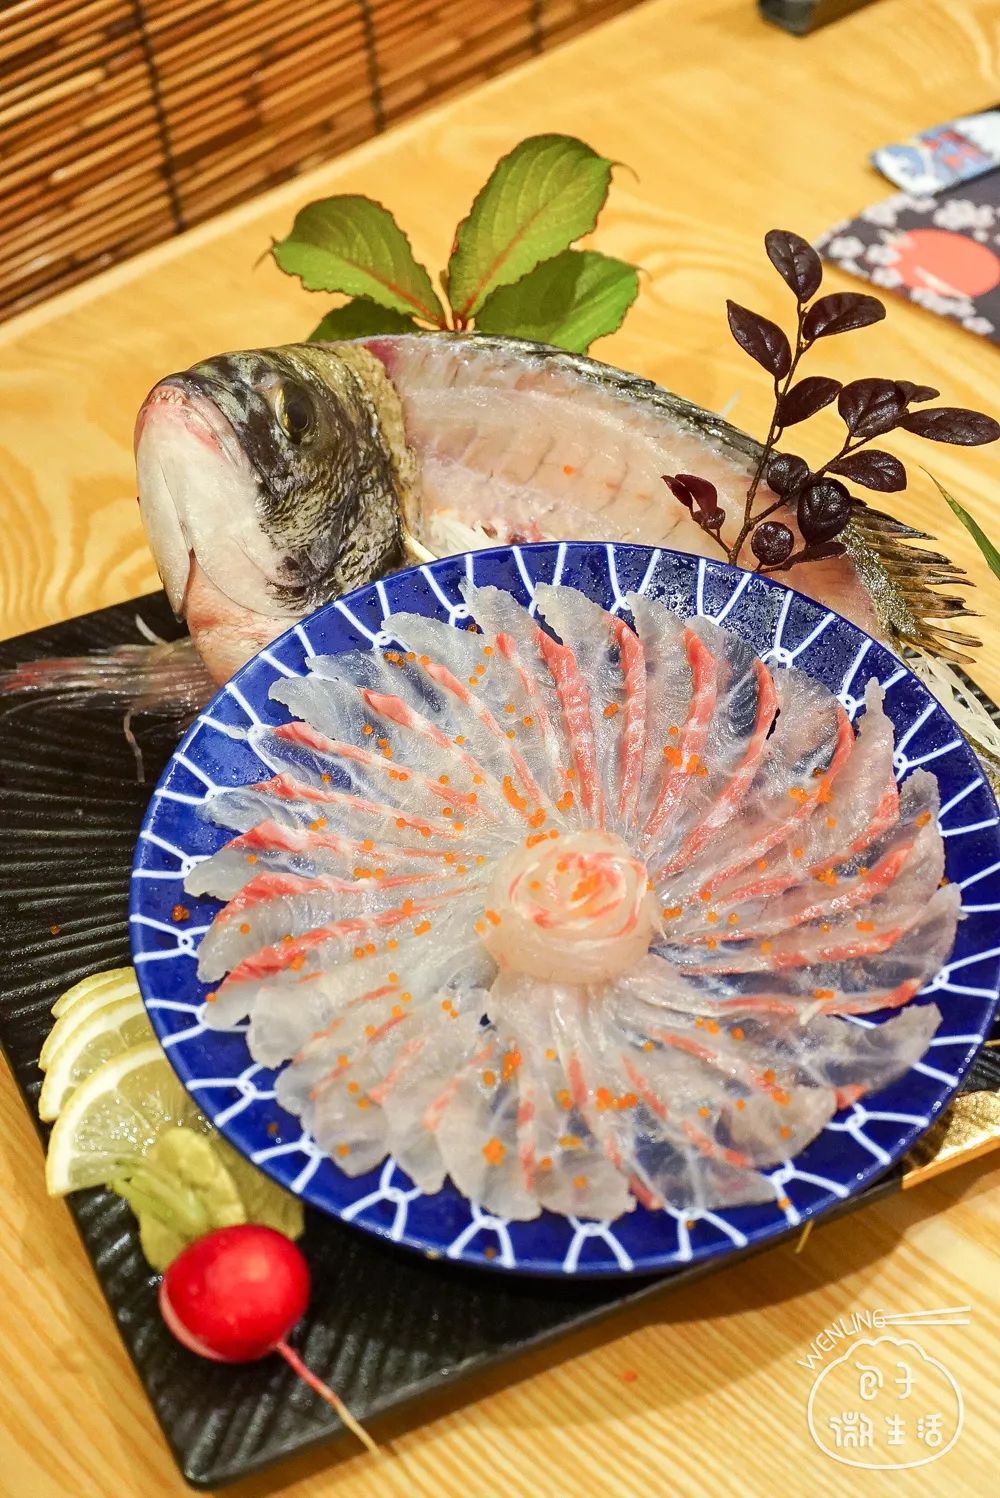 鲷鱼因肉质细嫩,味道鲜美,所以做成活鲷鱼刺身是相当经典的吃法!